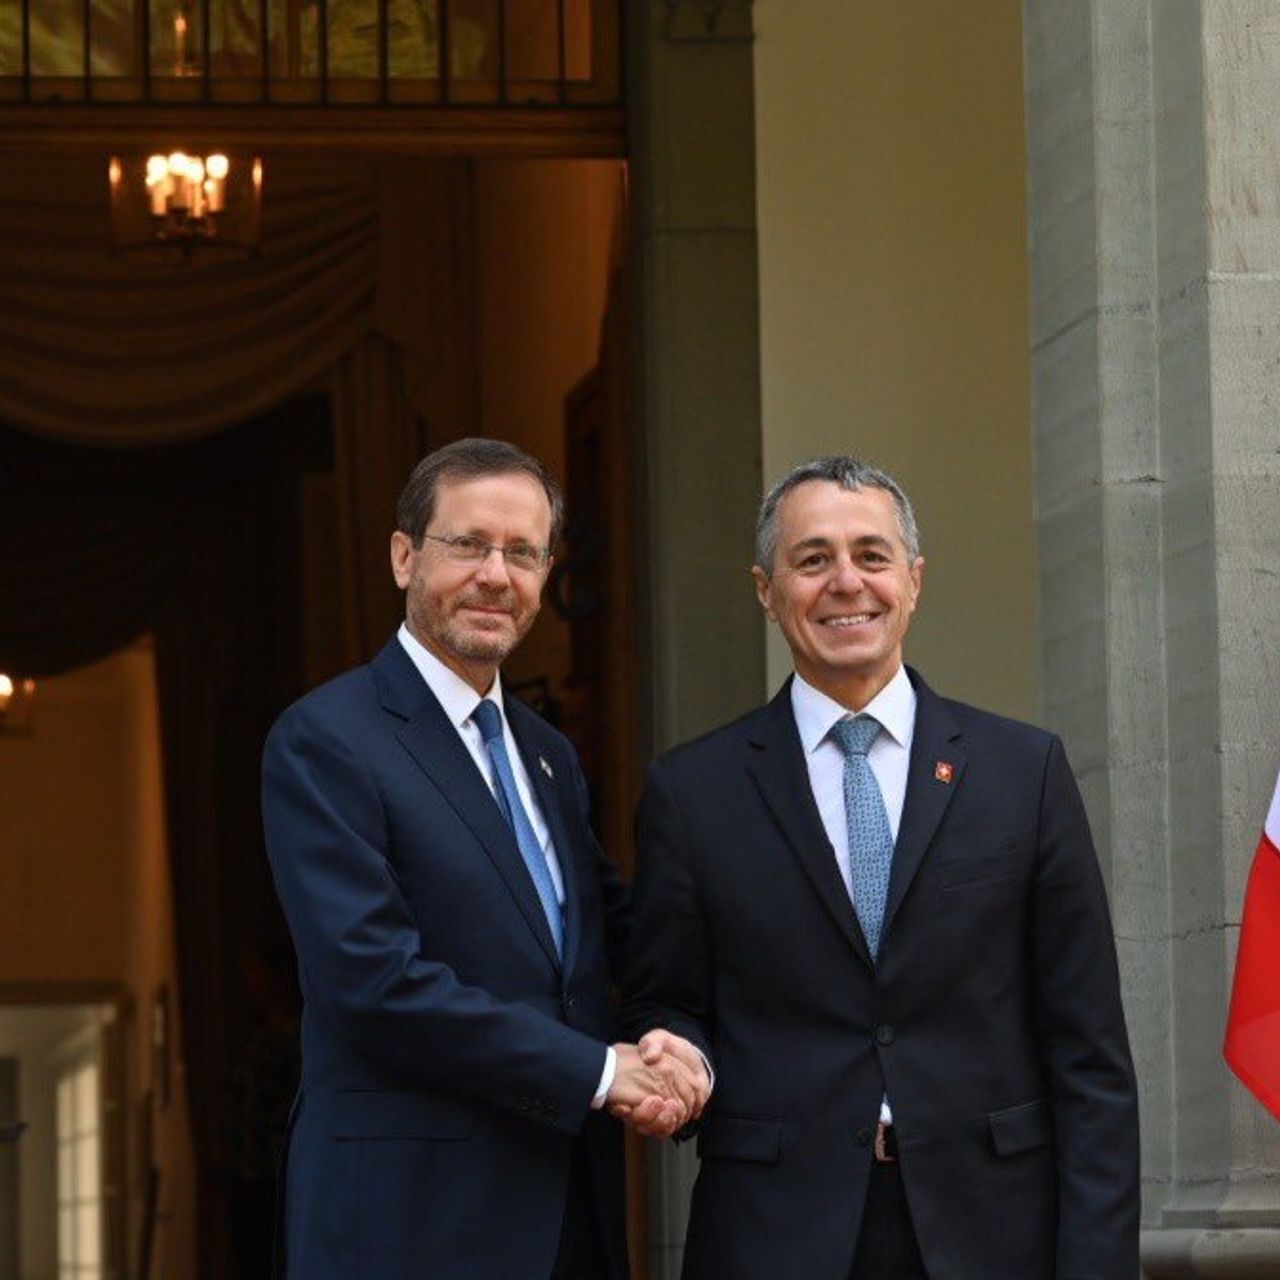 Официальная встреча между Исааком Герцогом, президентом Государства Израиль, и Игнацио Кассисом, президентом Швейцарской Конфедерации, 29 августа 2022 года в резиденции Лон.